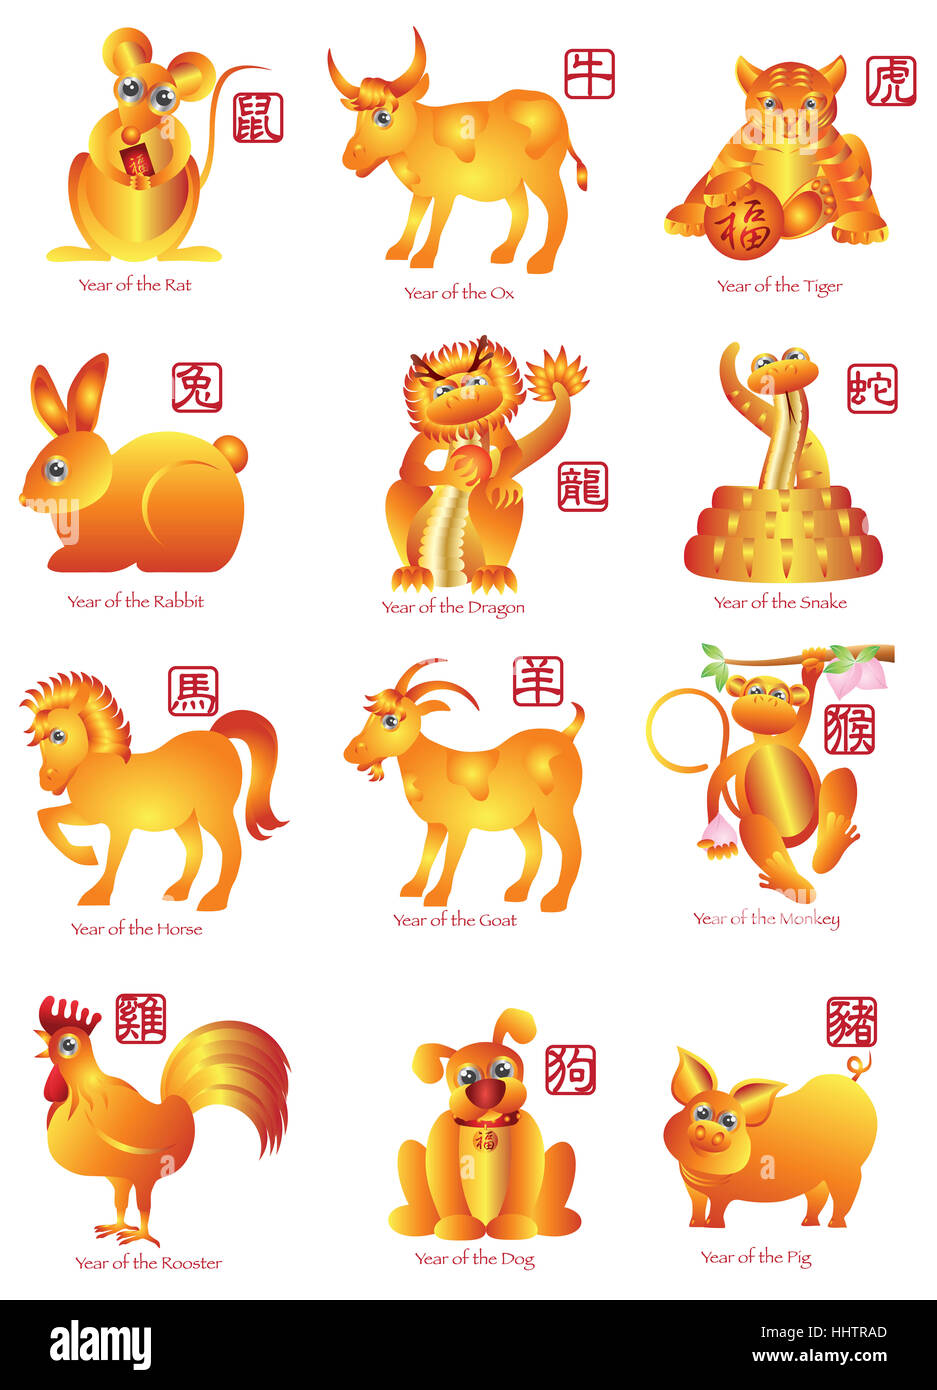 lunar new year animals dragon